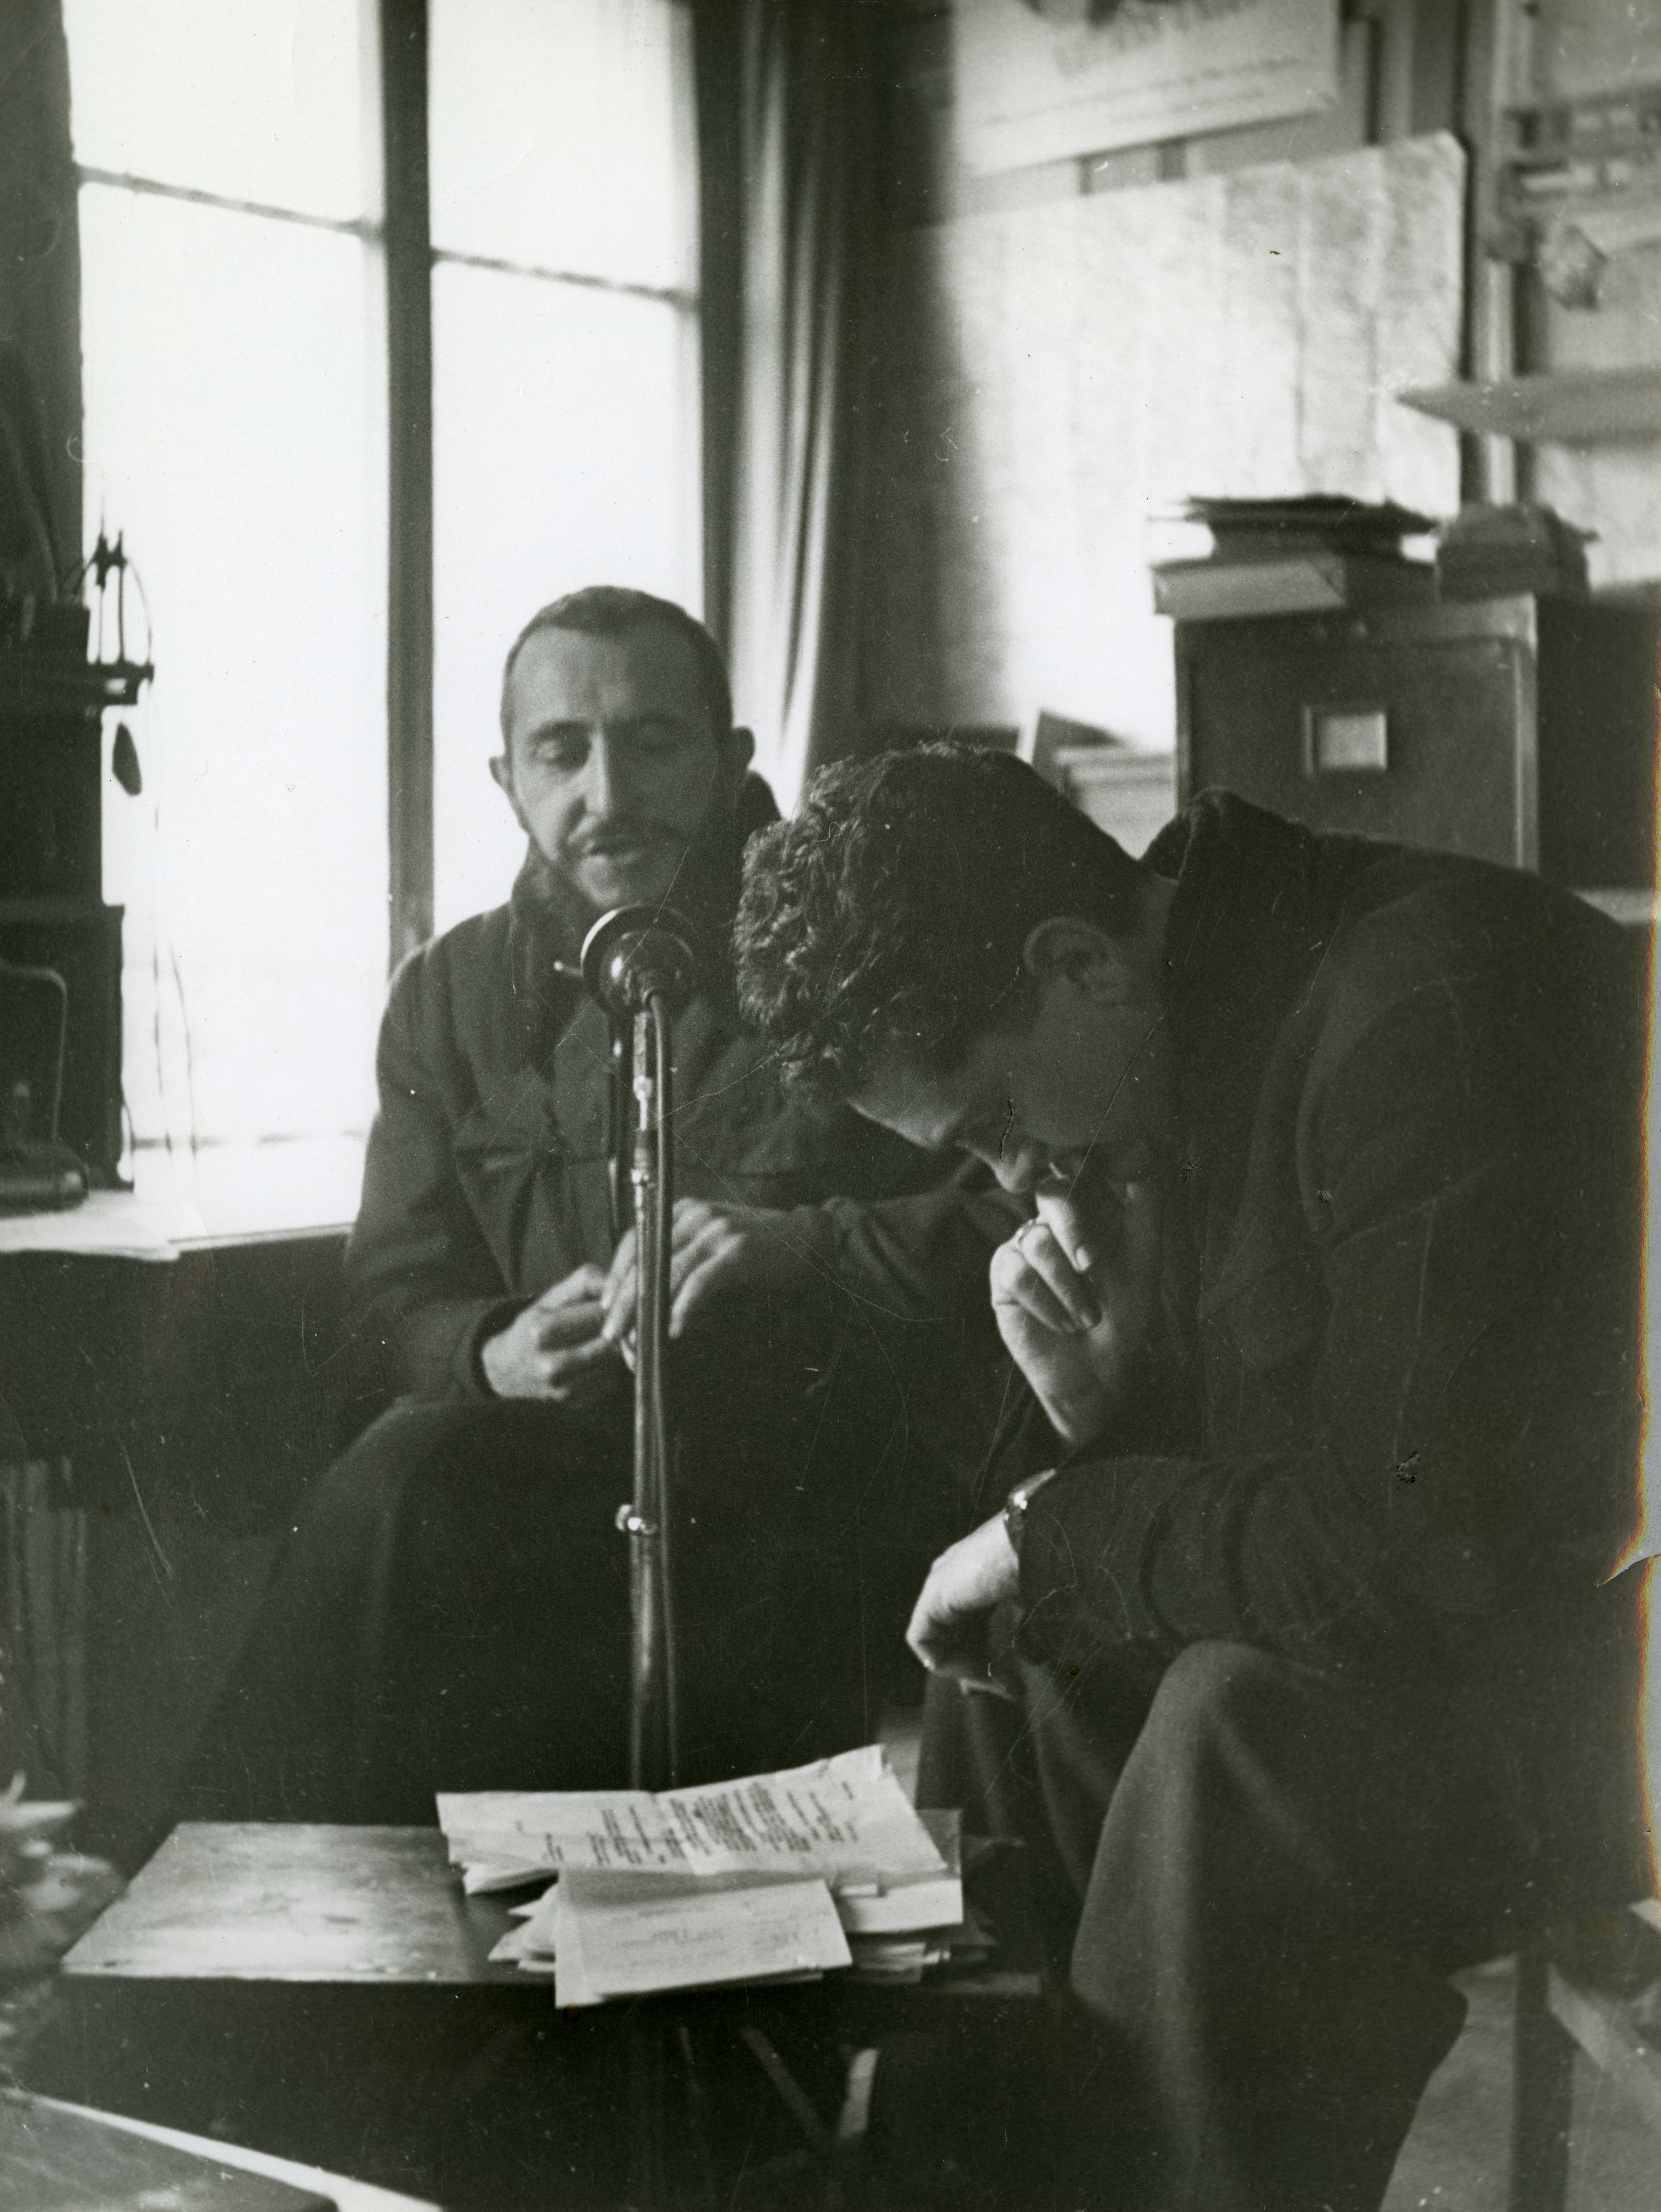 L’abbé Pierre dans son bureau à Neuilly-Plaisance, enregistrant une émission pour Radio Luxembourg (lancement de la campagne des billets de 100 francs), 1954. ©Emmaüs International